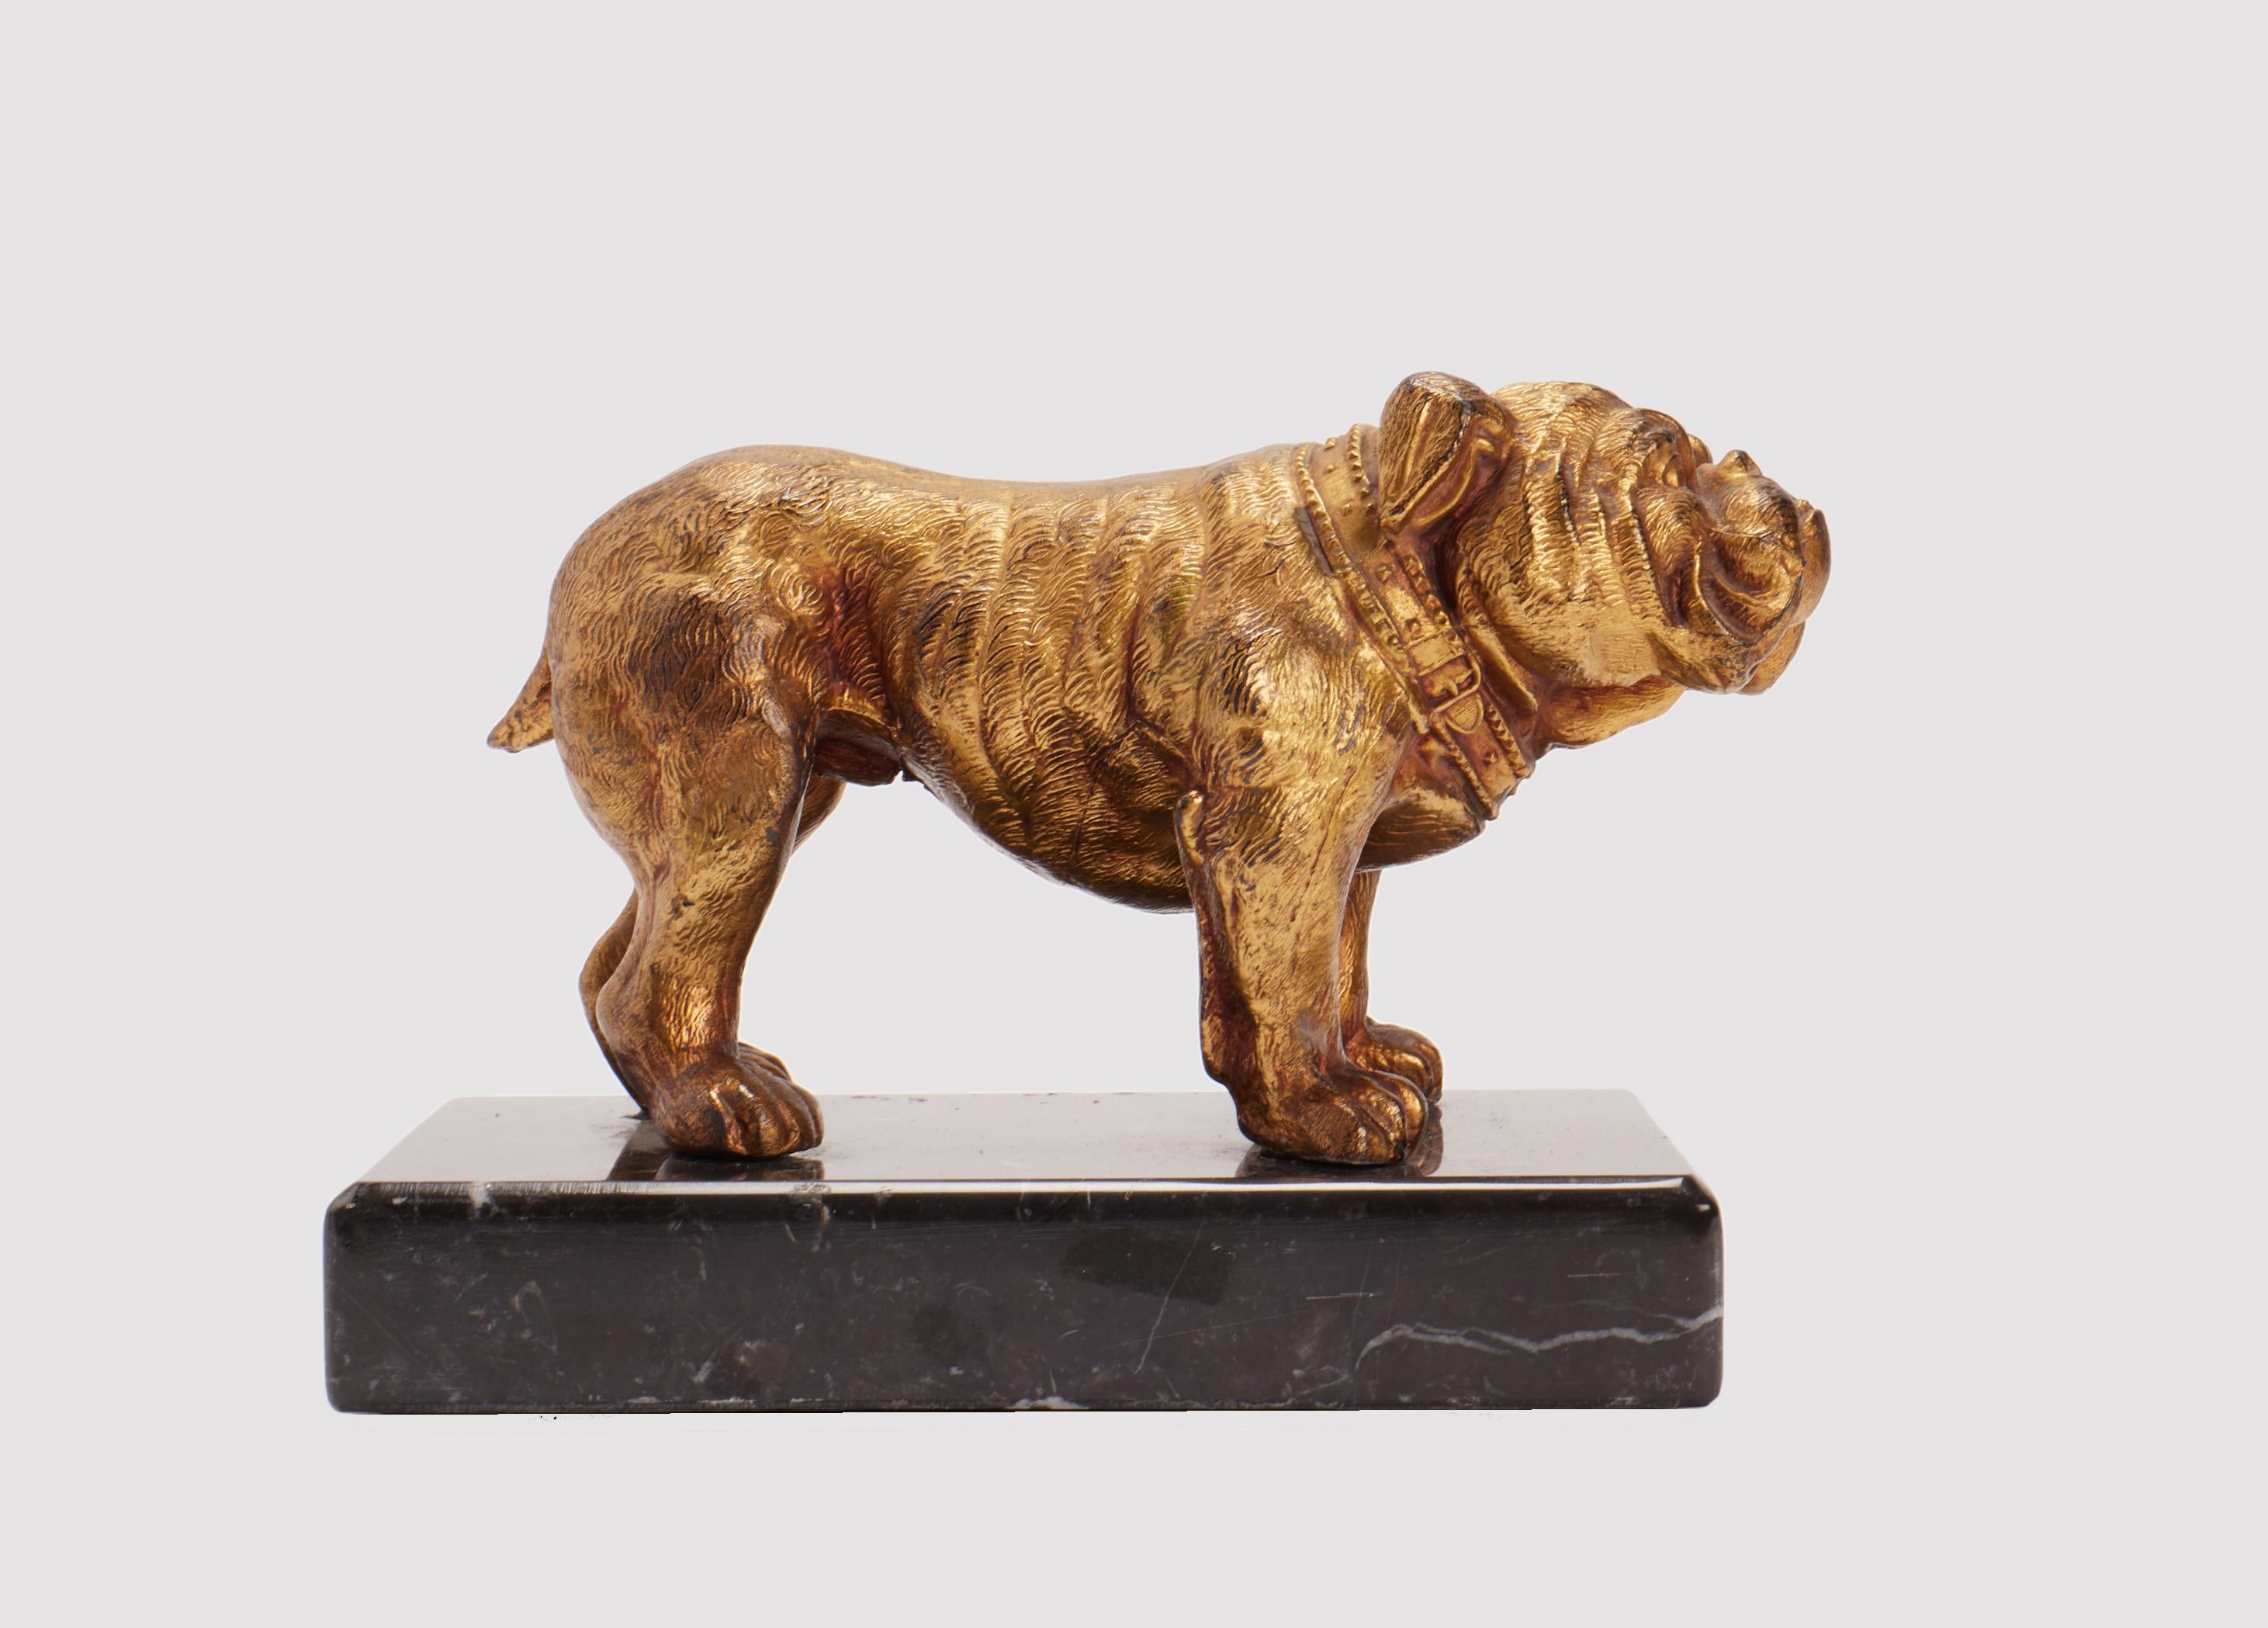 Goldene Metallskulptur aus Antimon, die eine englische Bulldogge darstellt, montiert auf einem Sockel aus geädertem schwarzem Marmor. Signiert J. B. America um 1890.